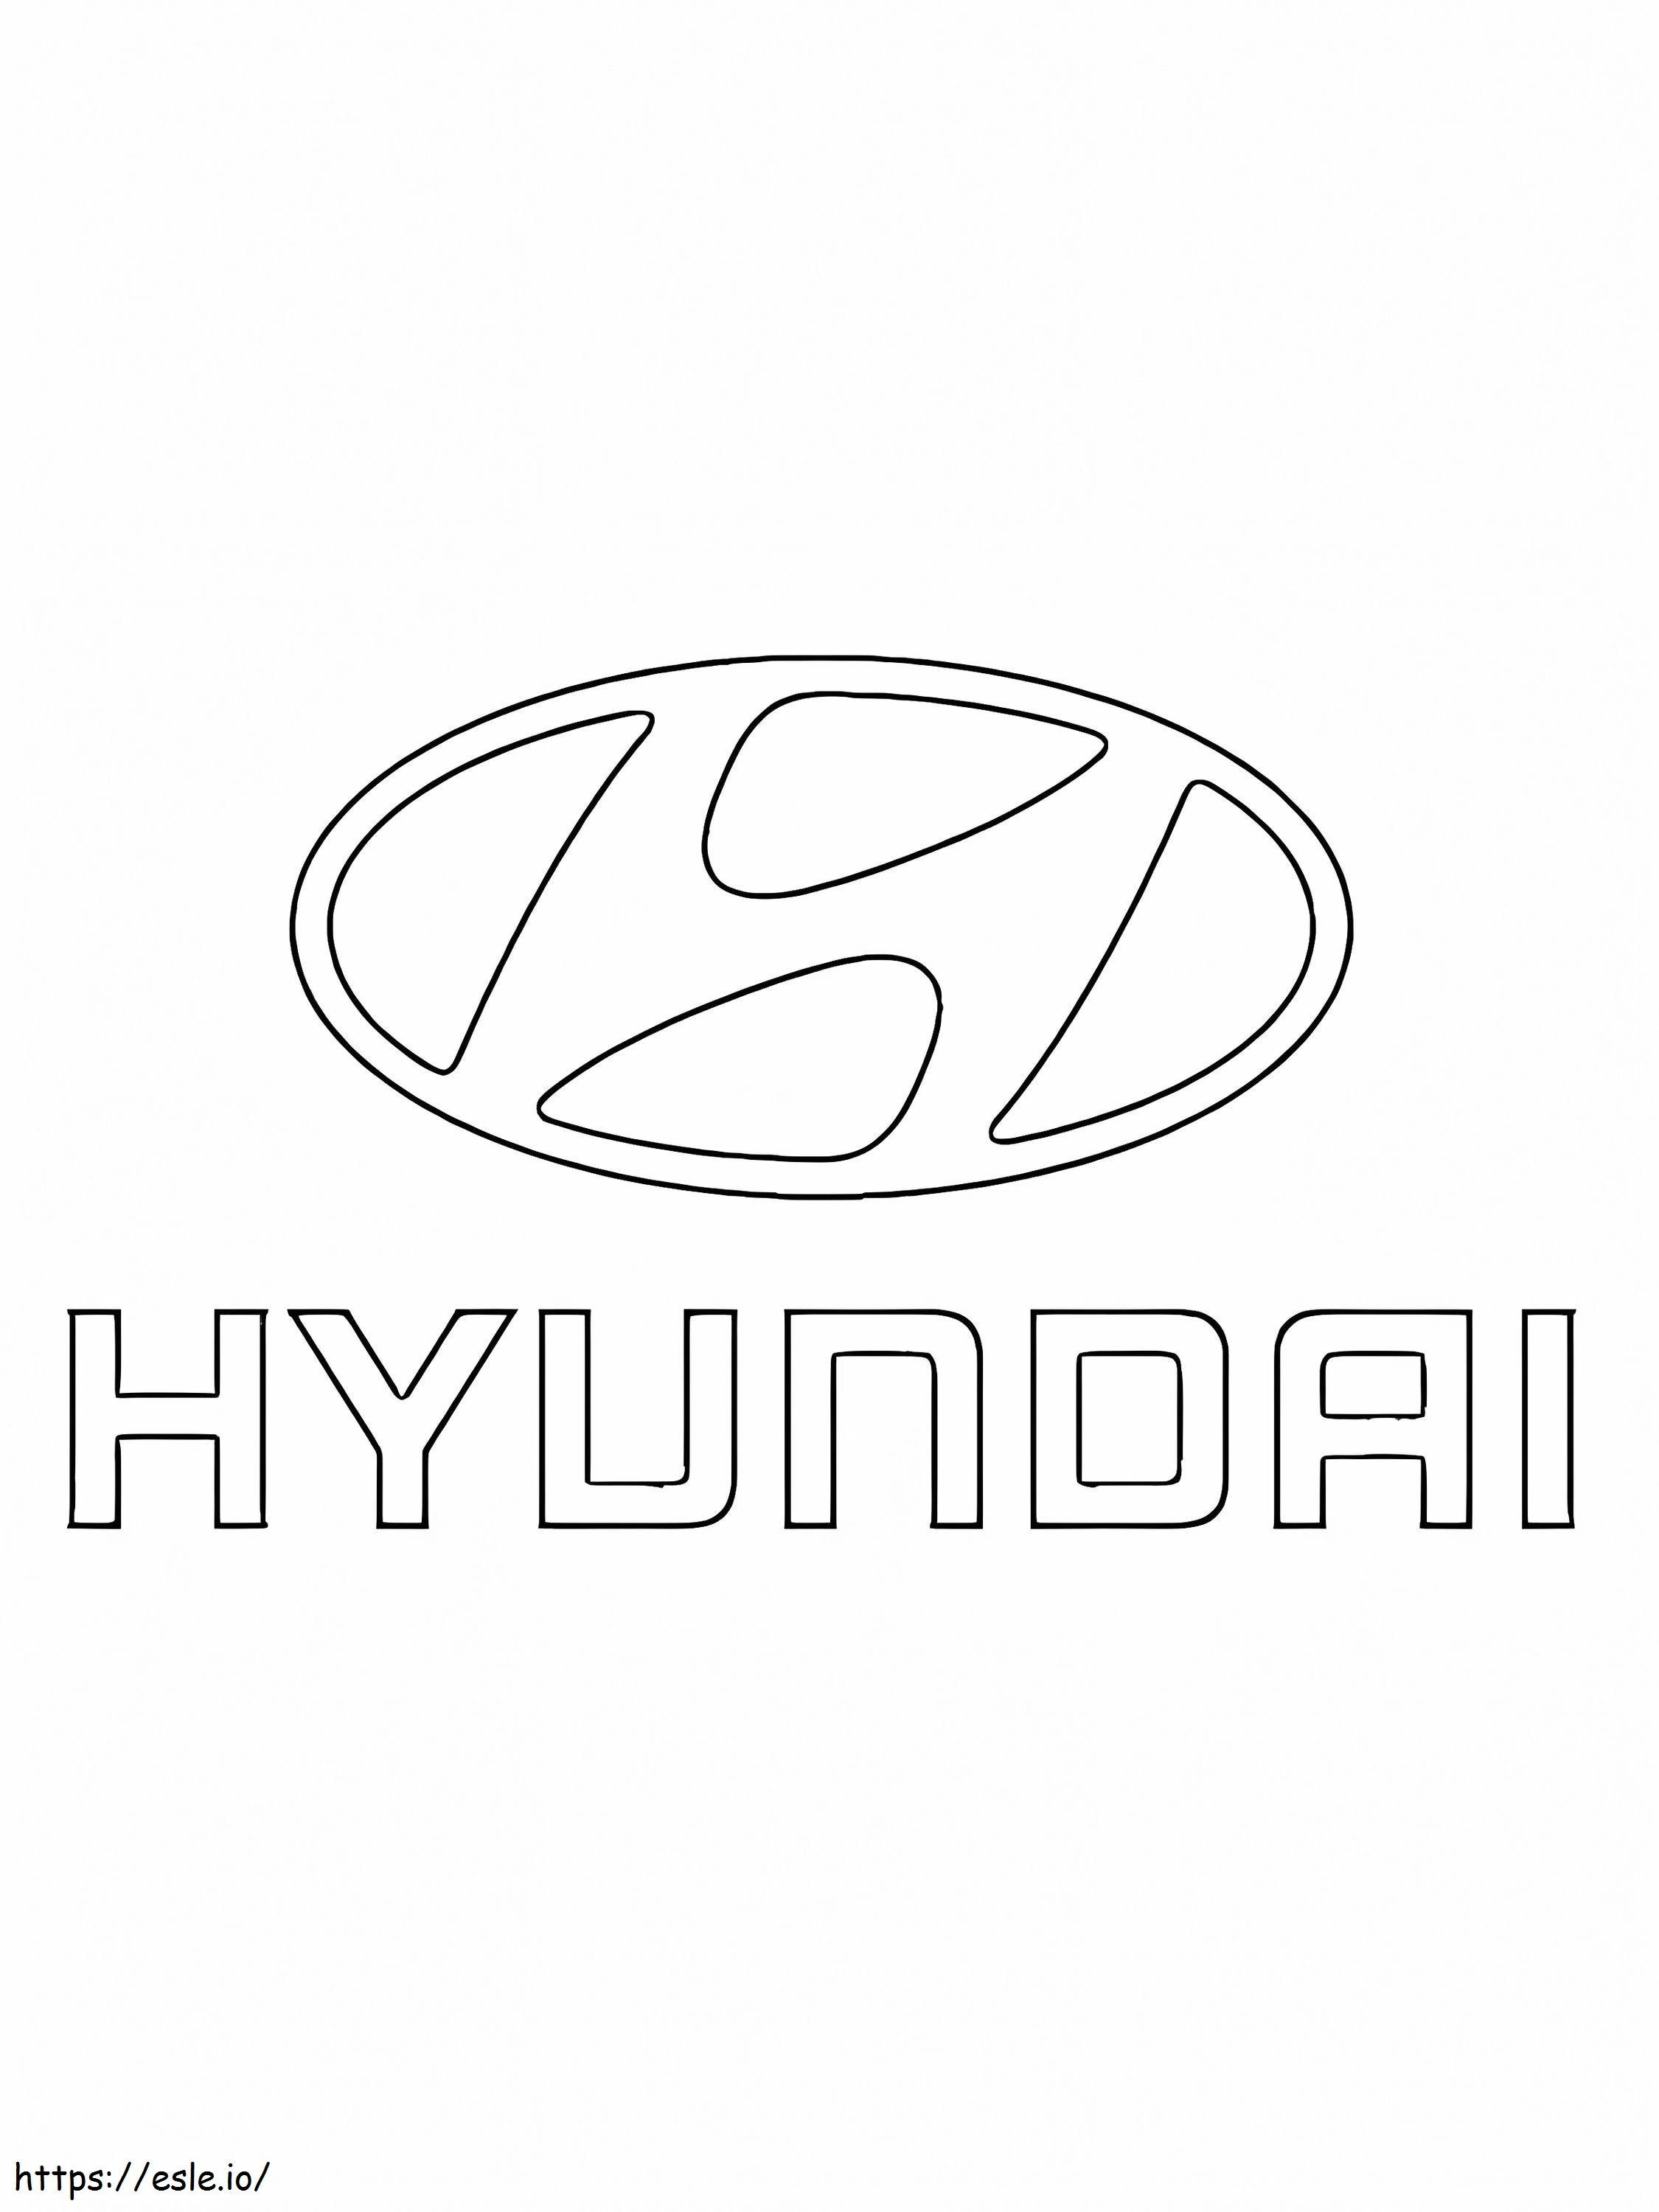 Logotipo De Hyundai coloring page